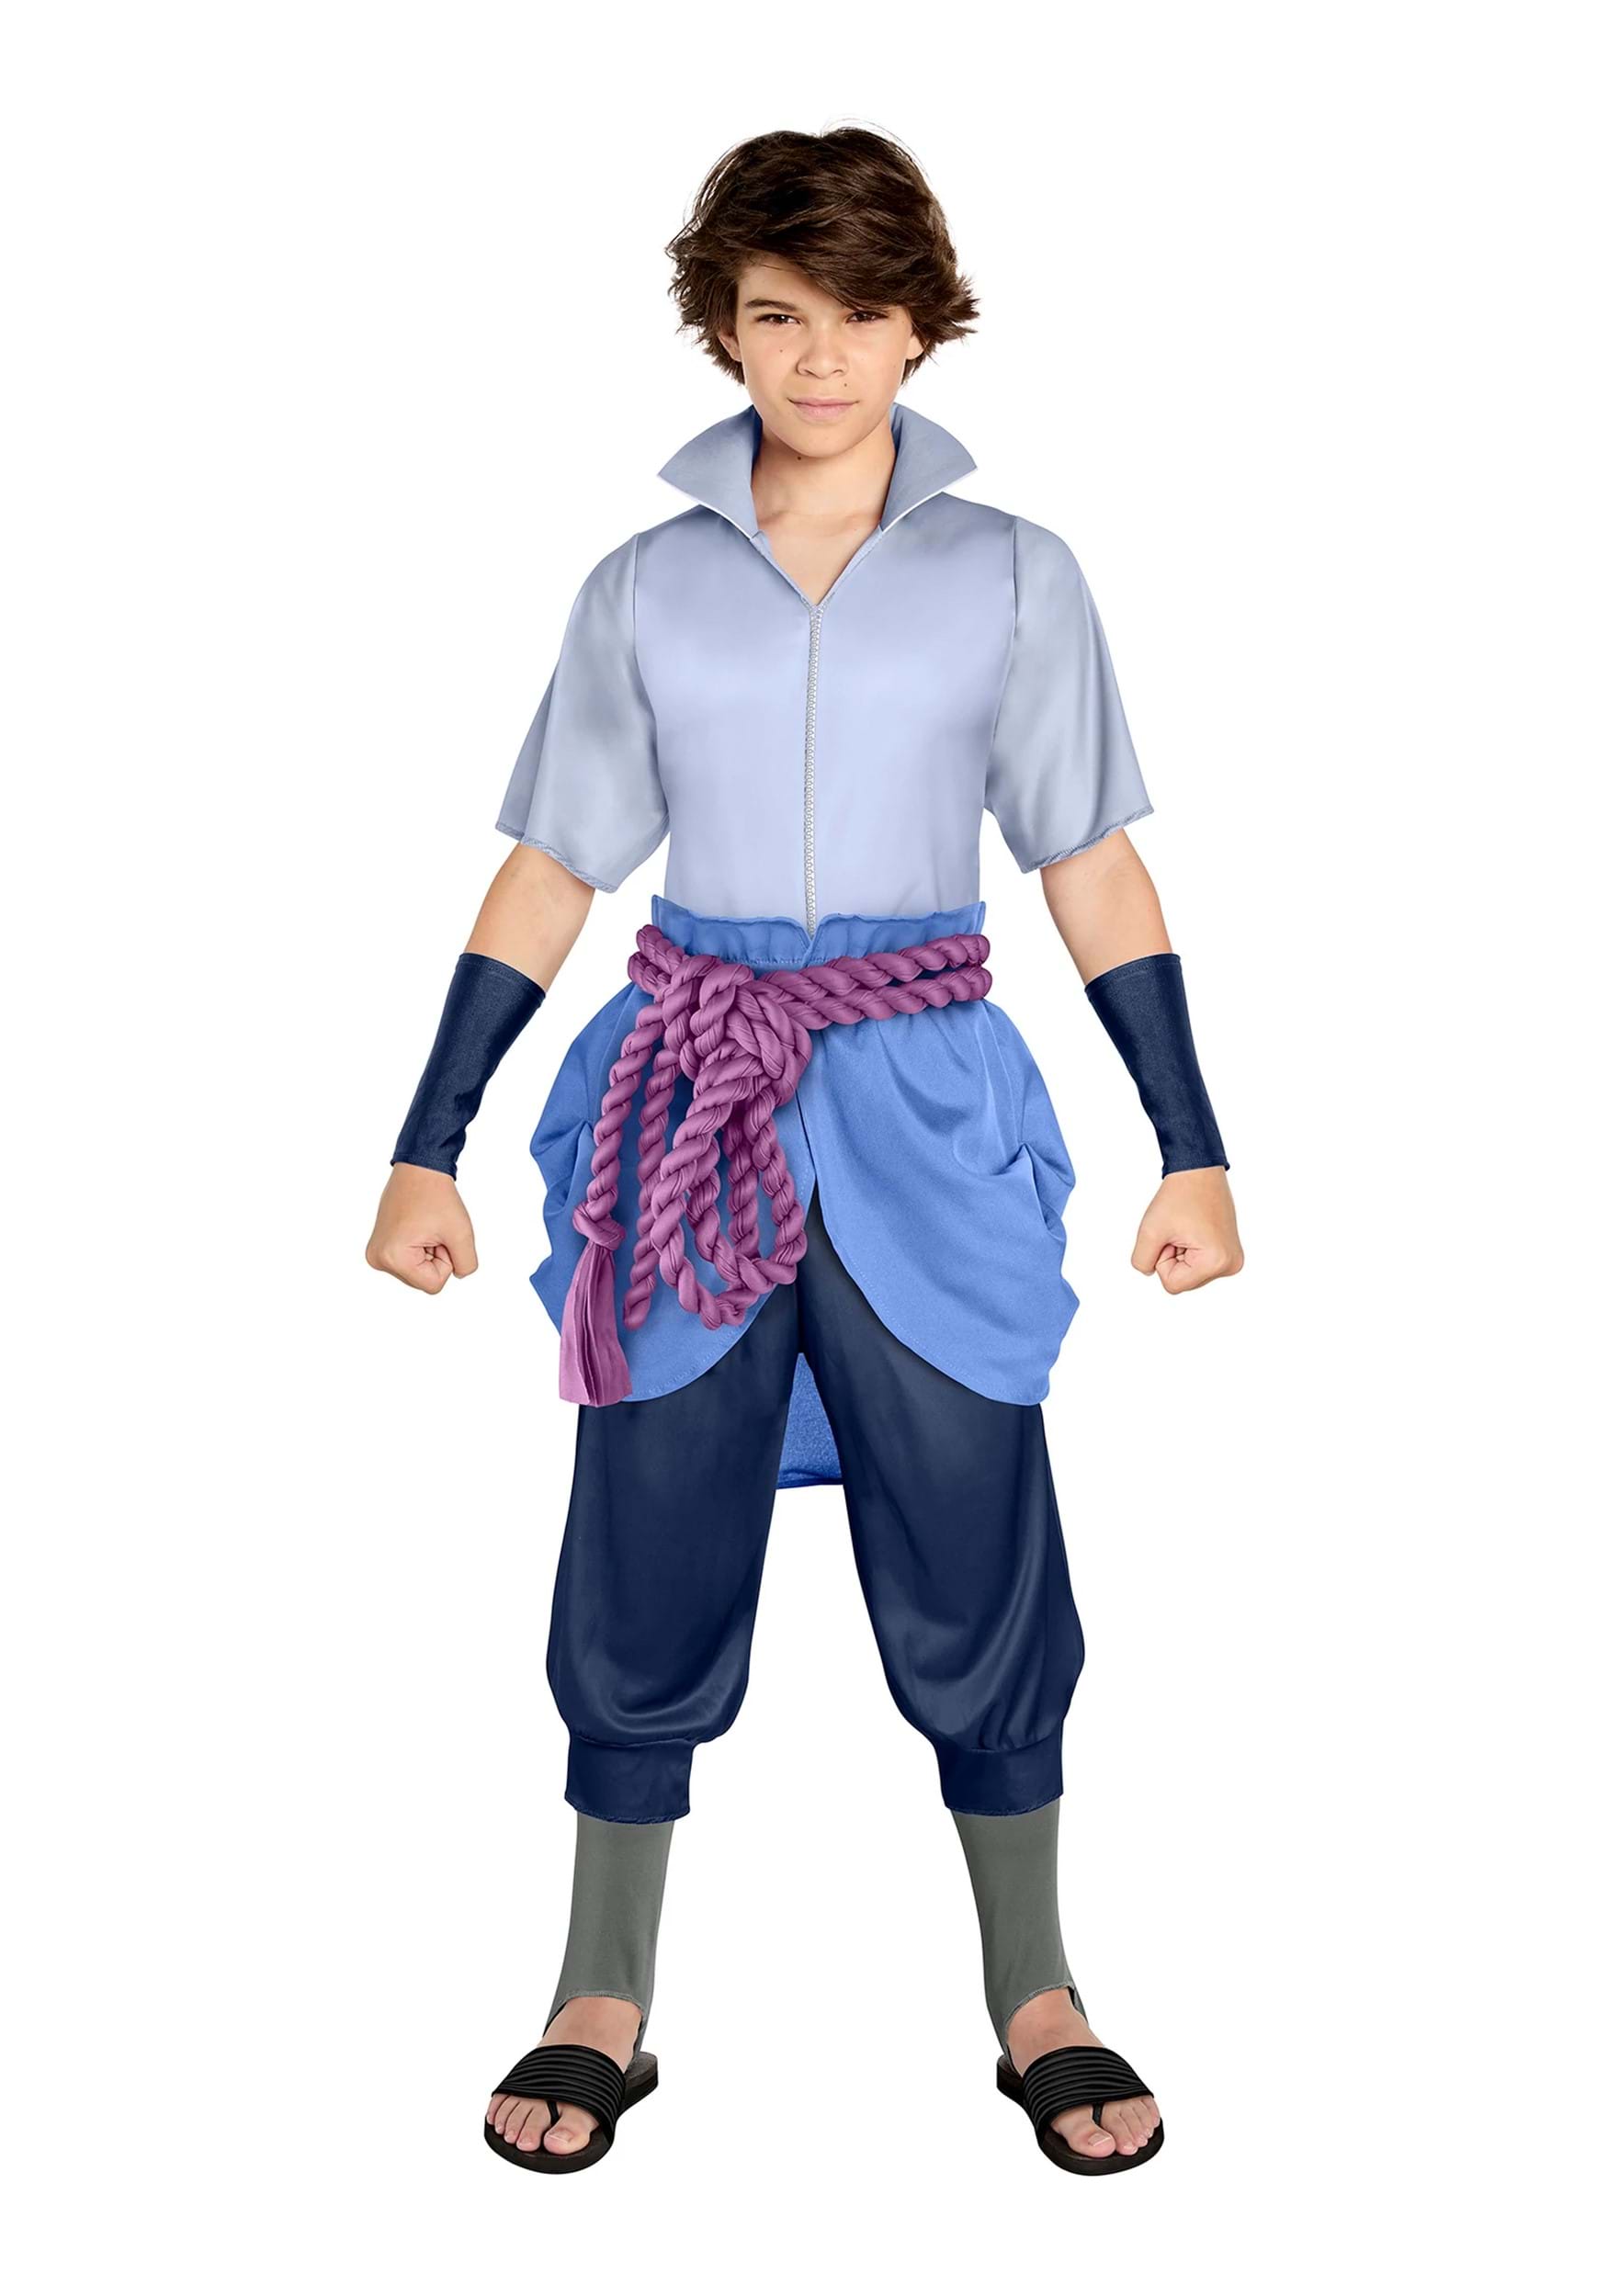 Anime cosplay Uchiha Sasuke Cosplay Kid's suit Costume Halloween